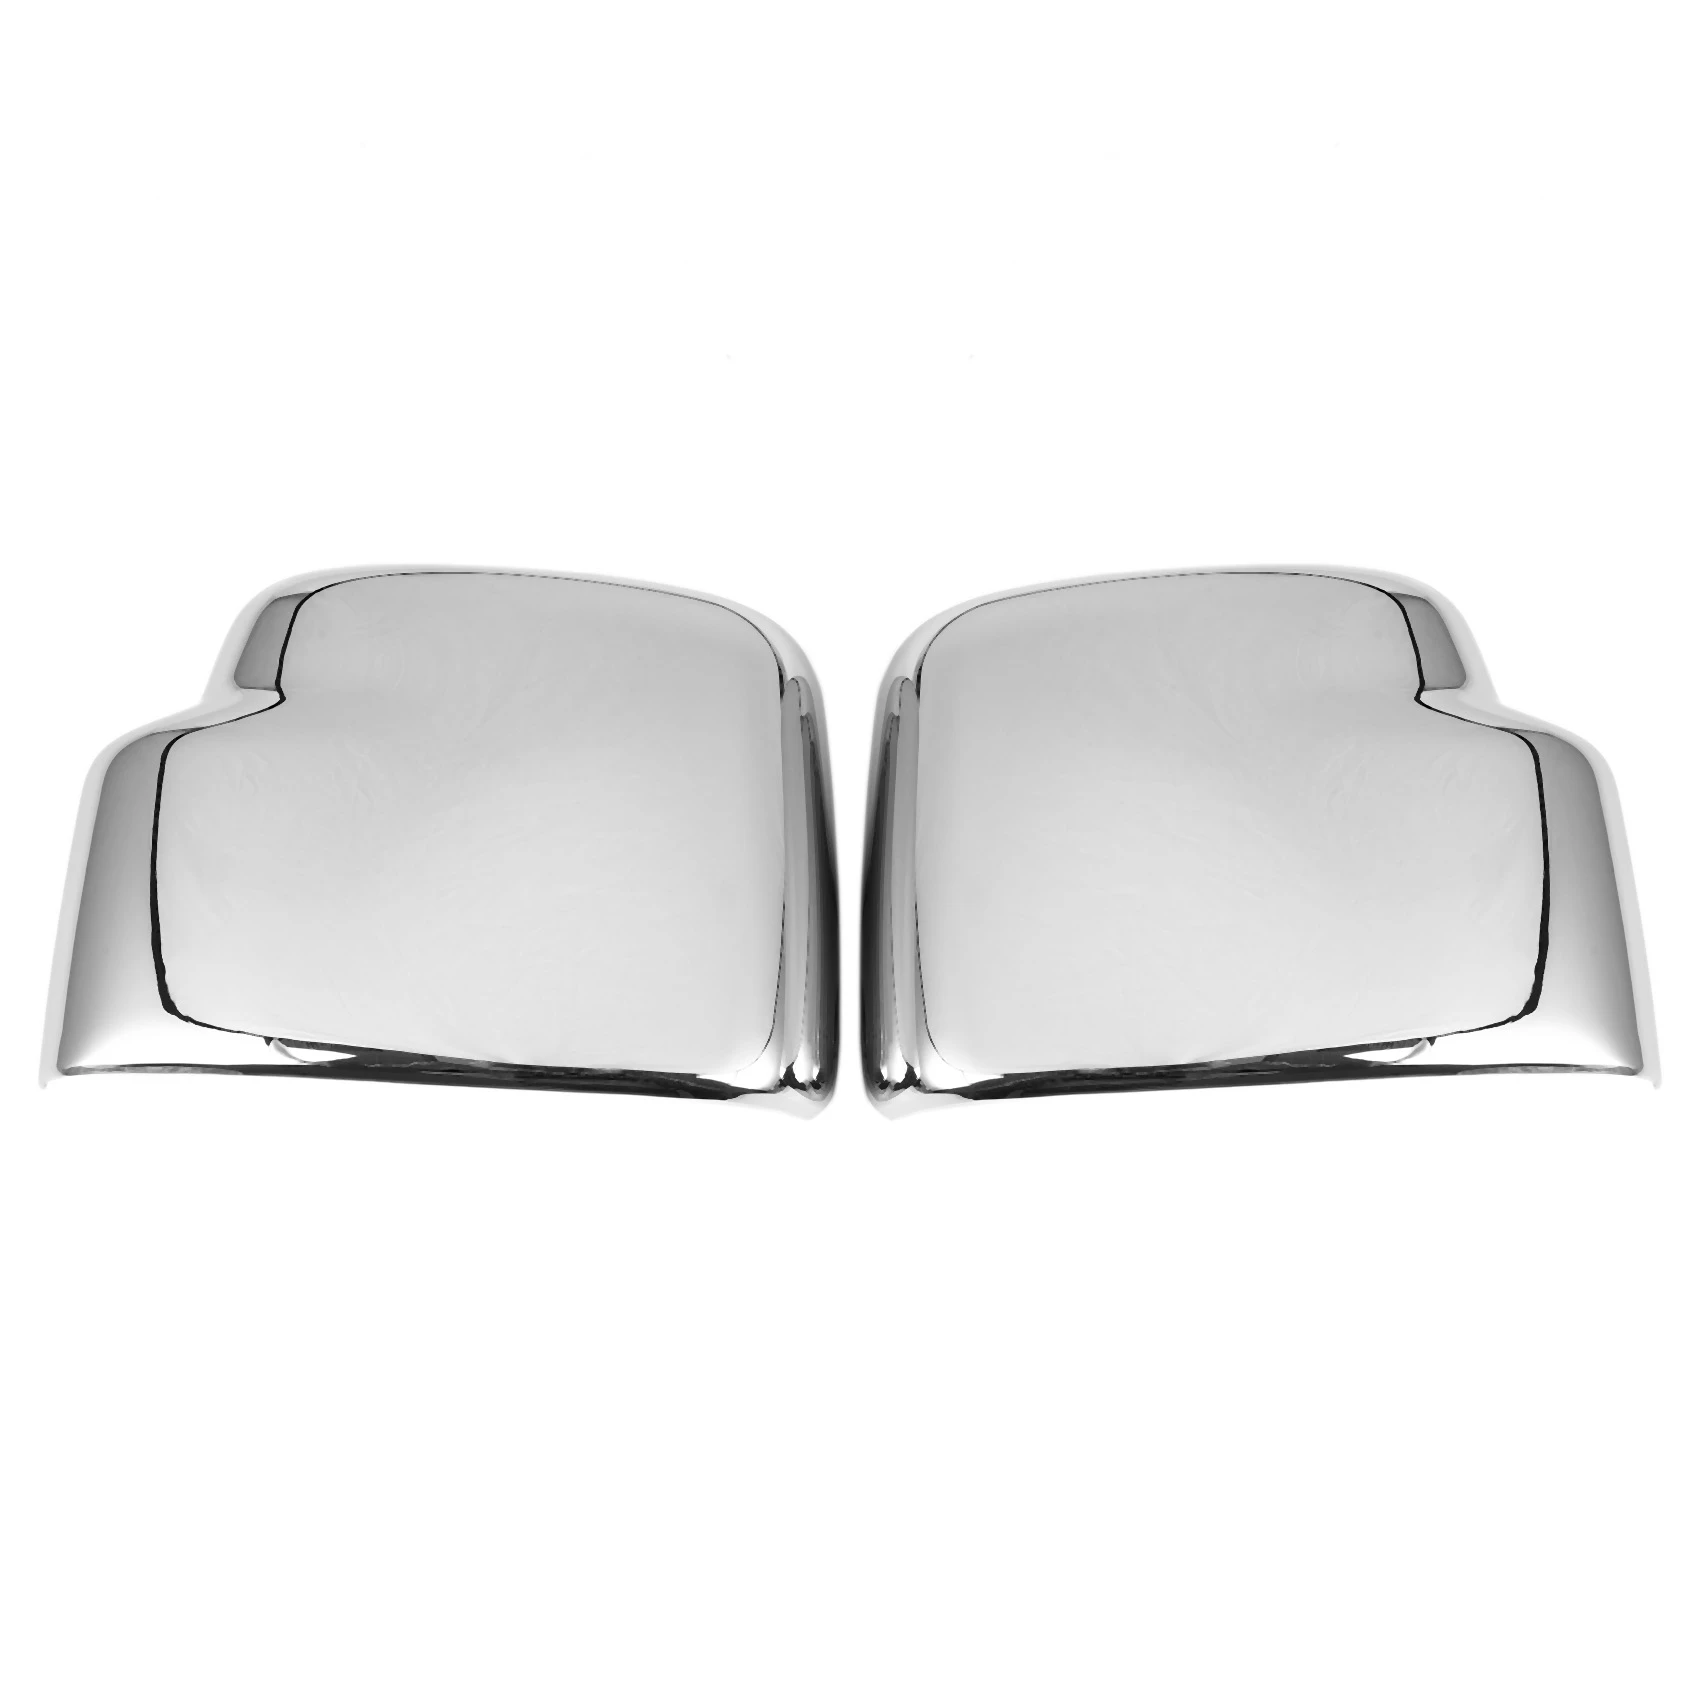 

Крышки для зеркала заднего вида, декоративный чехол для бокового зеркала для Suzuki Jimny 2007-2017, серебряная Автомобильная наклейка